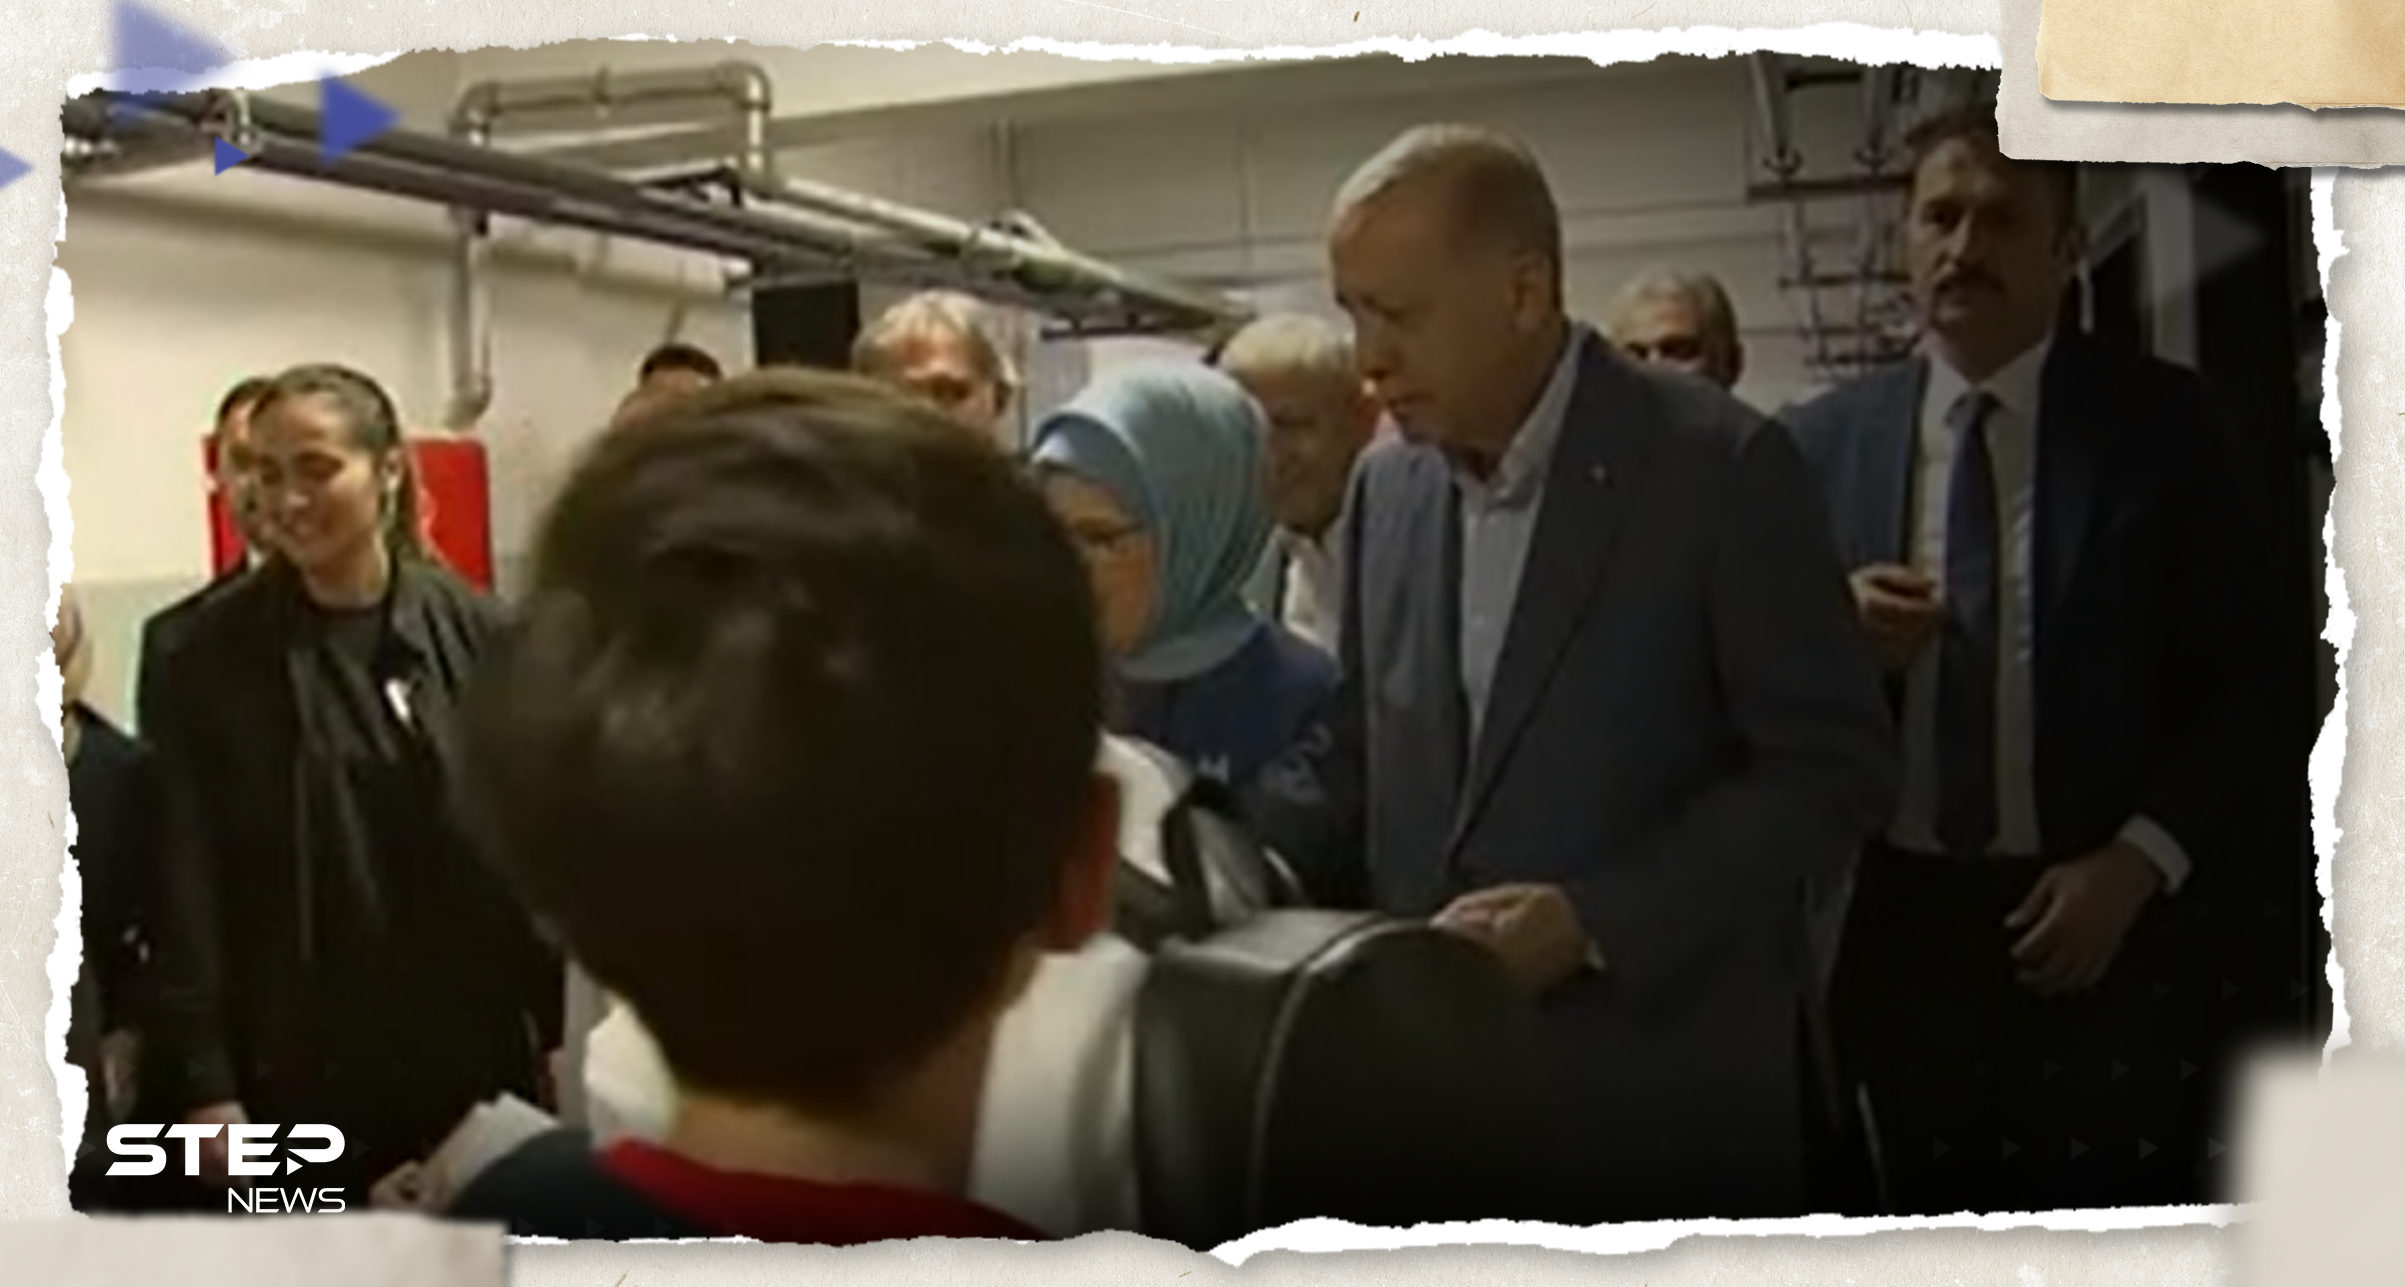 بالفيديو|| أردوغان يوزع الأموال والهدايا على أطفال في مركز اقتراع وأحدهم: انت من سينتصر